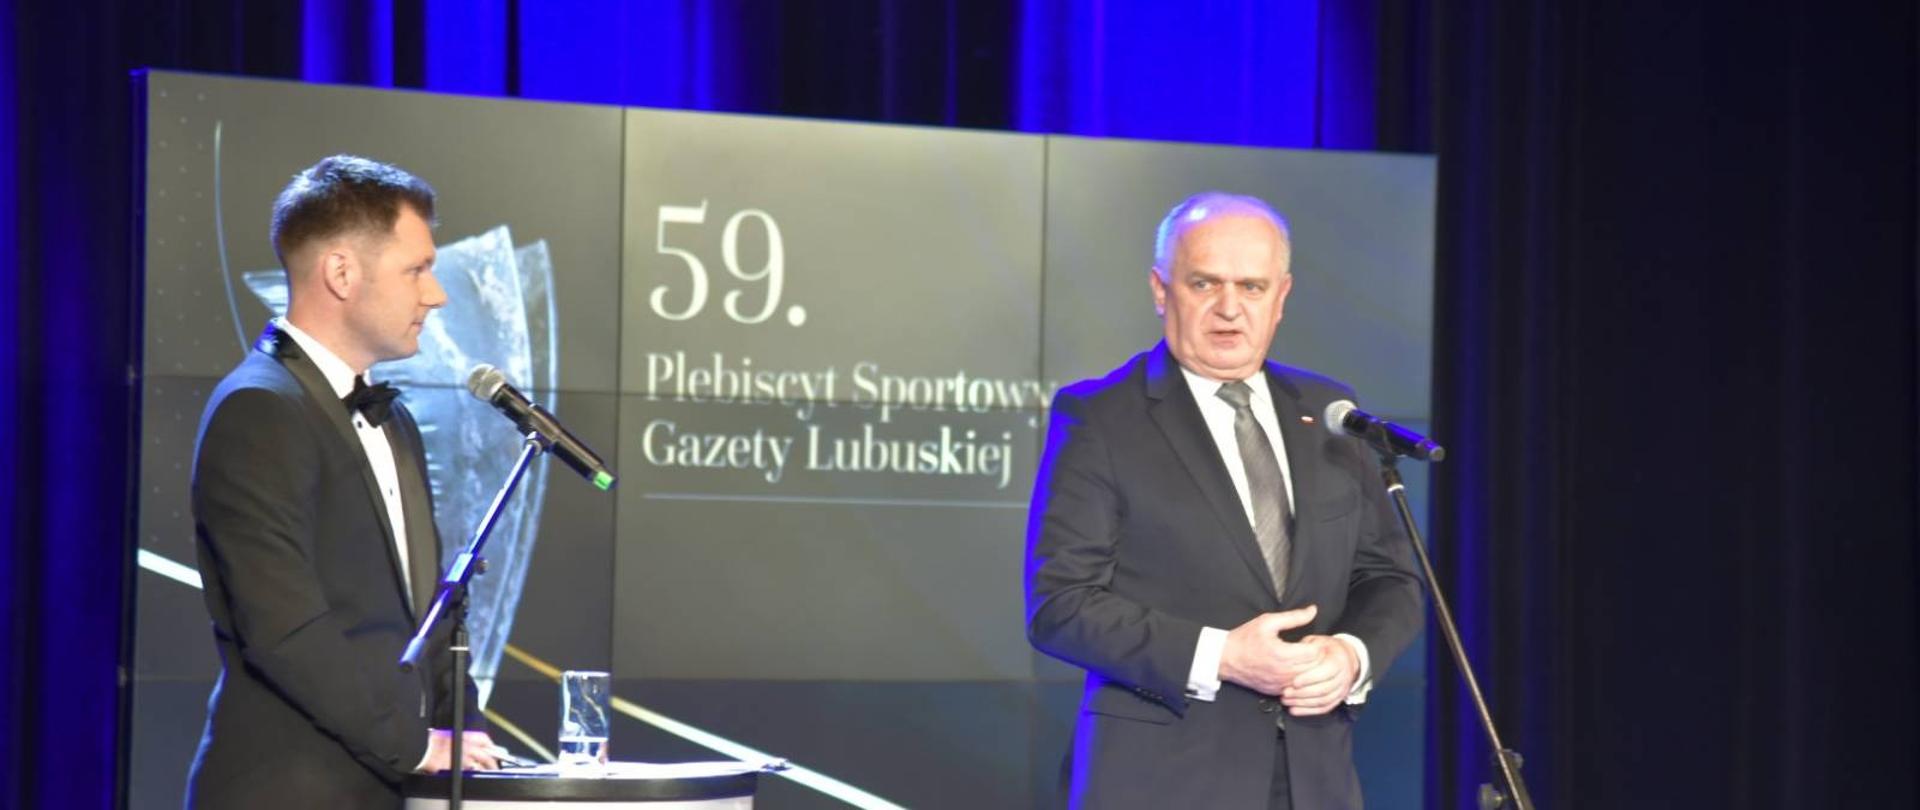 59. plebiscyt sportowy Gazety Lubuskiej - przemówienie wojewody 